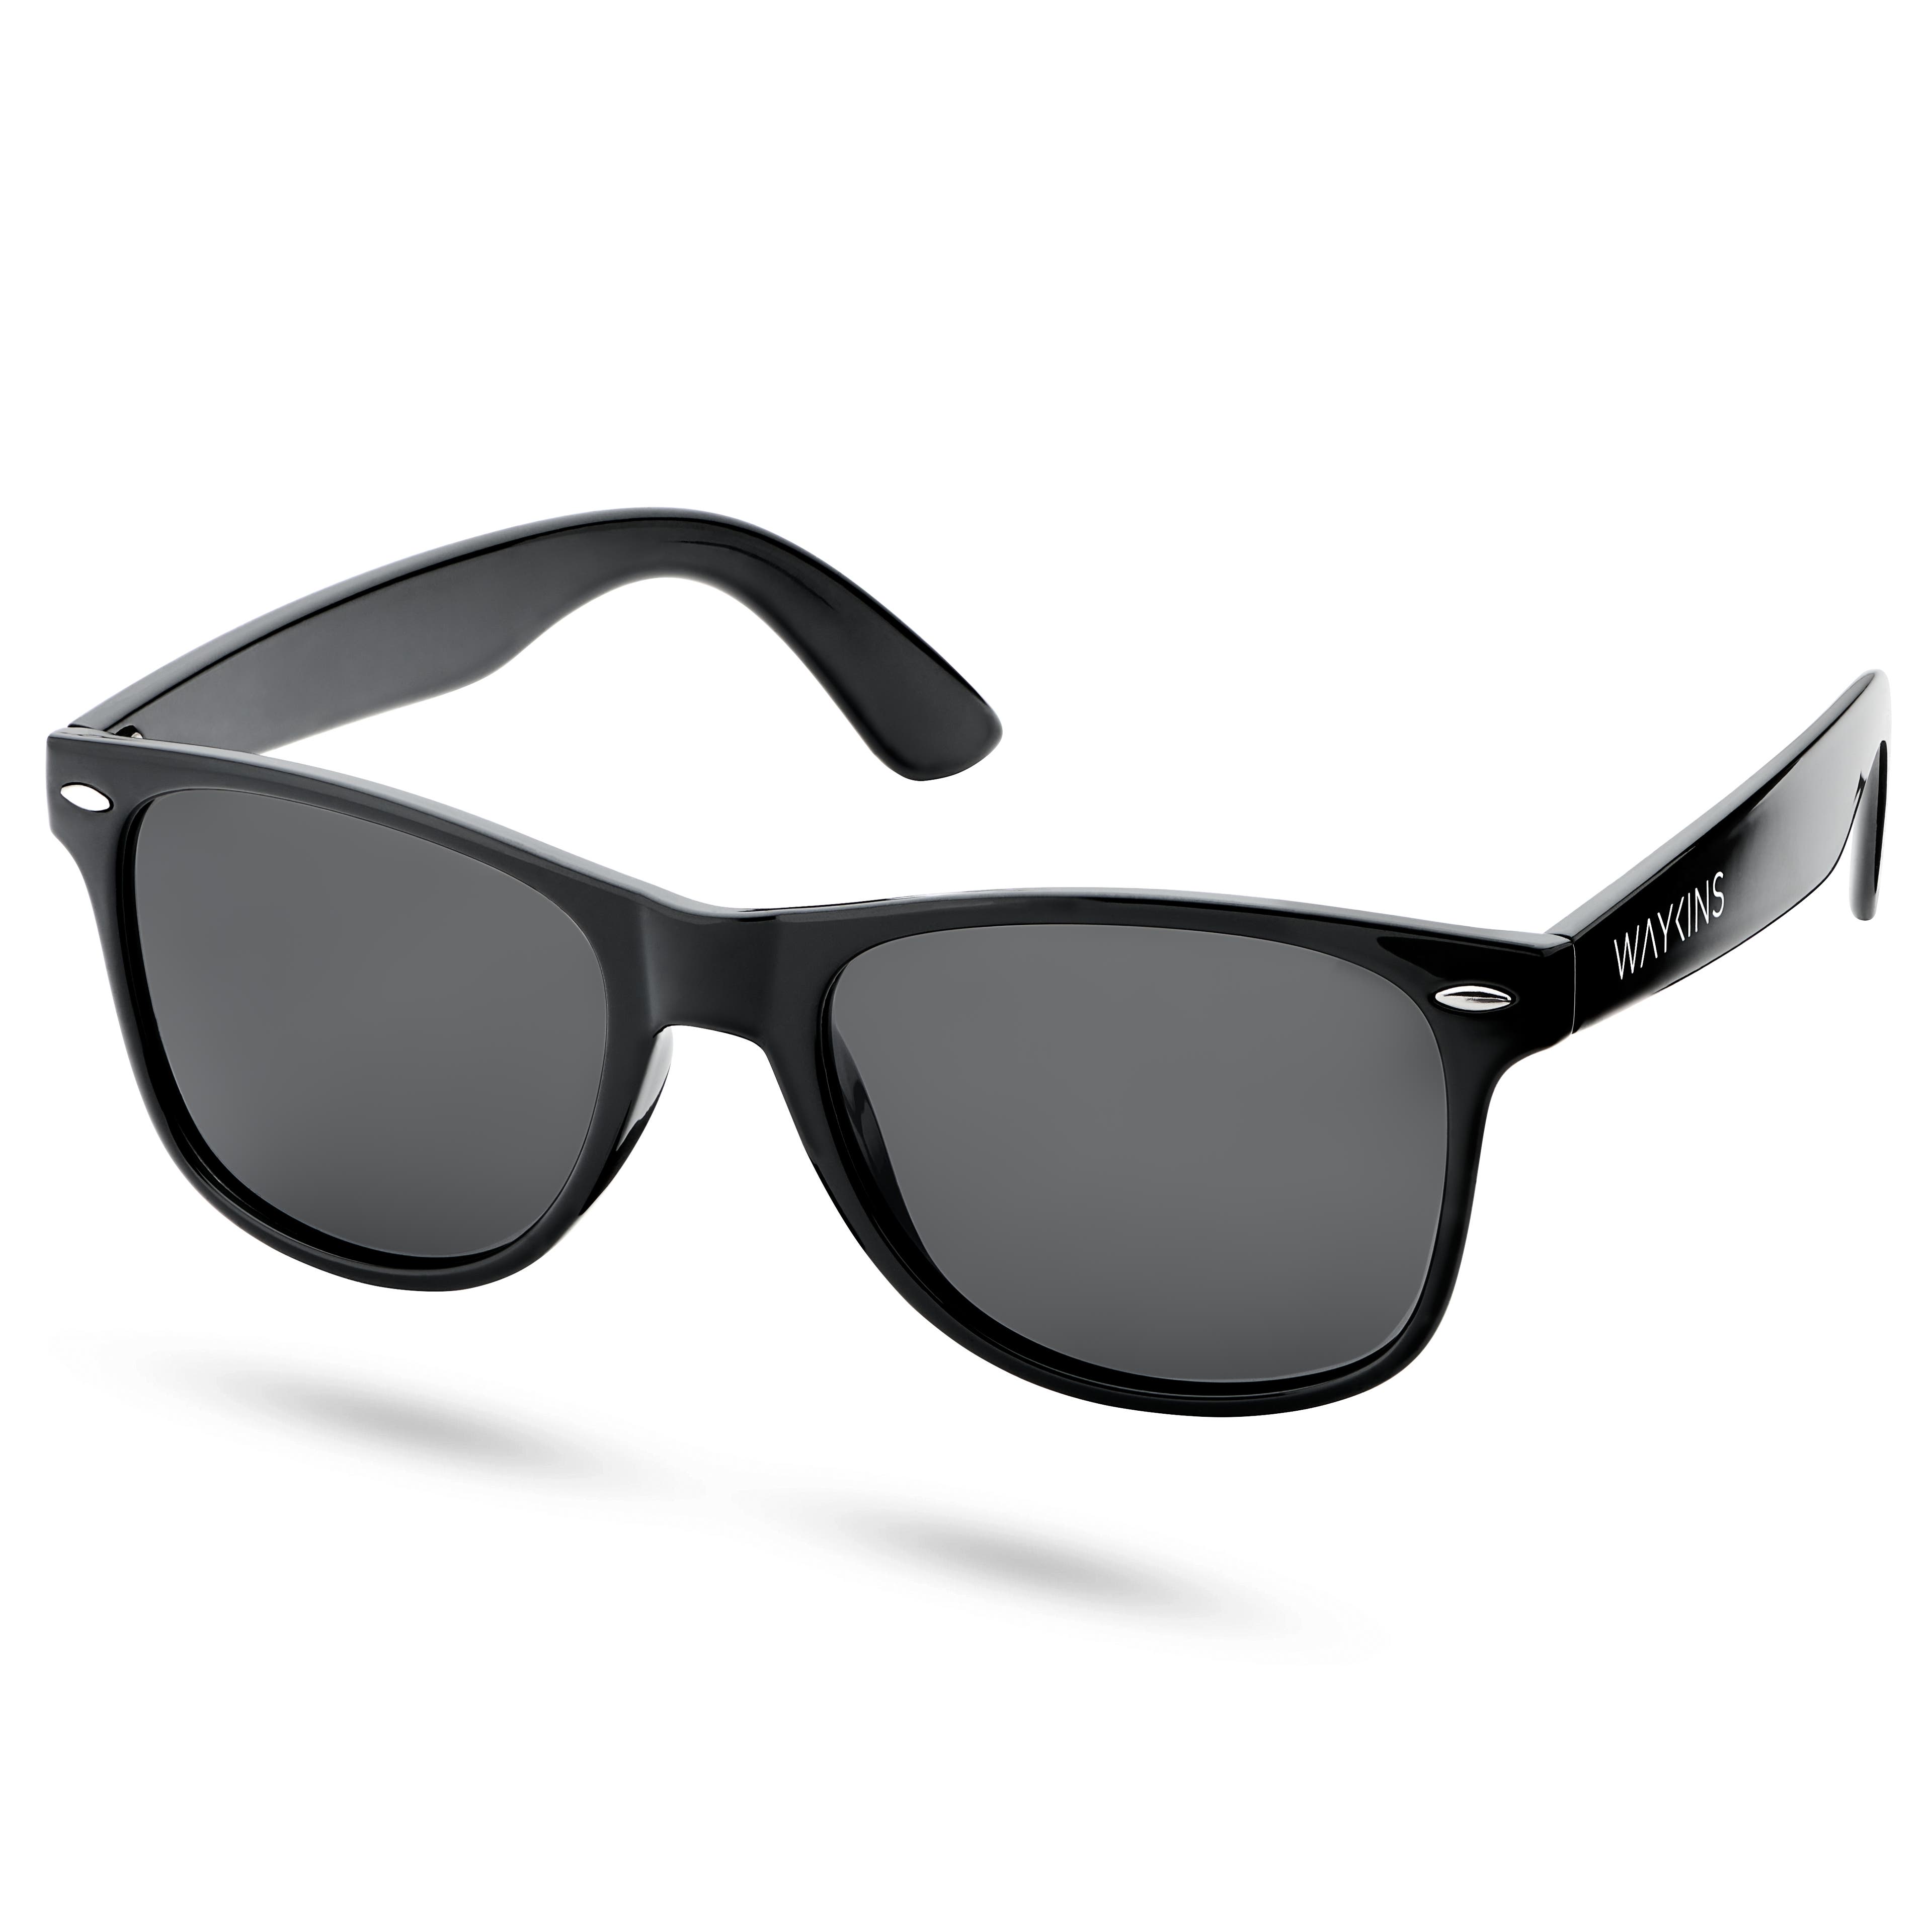 Czarne polaryzacyjne okulary przeciwsłoneczne retro